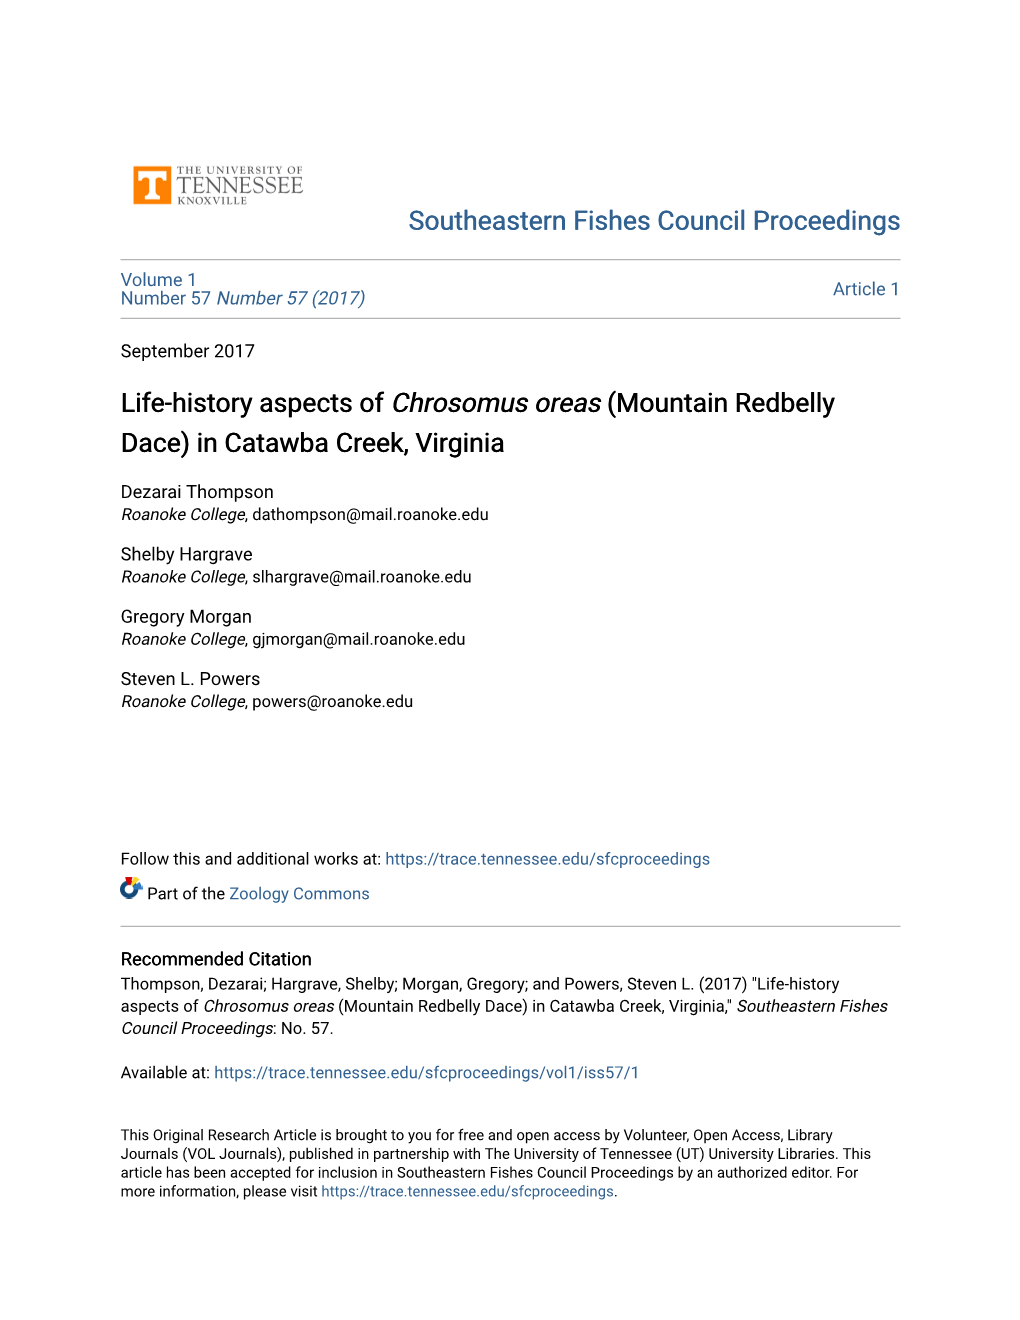 Life-History Aspects of Chrosomus Oreas (Mountain Redbelly Dace) in Catawba Creek, Virginia